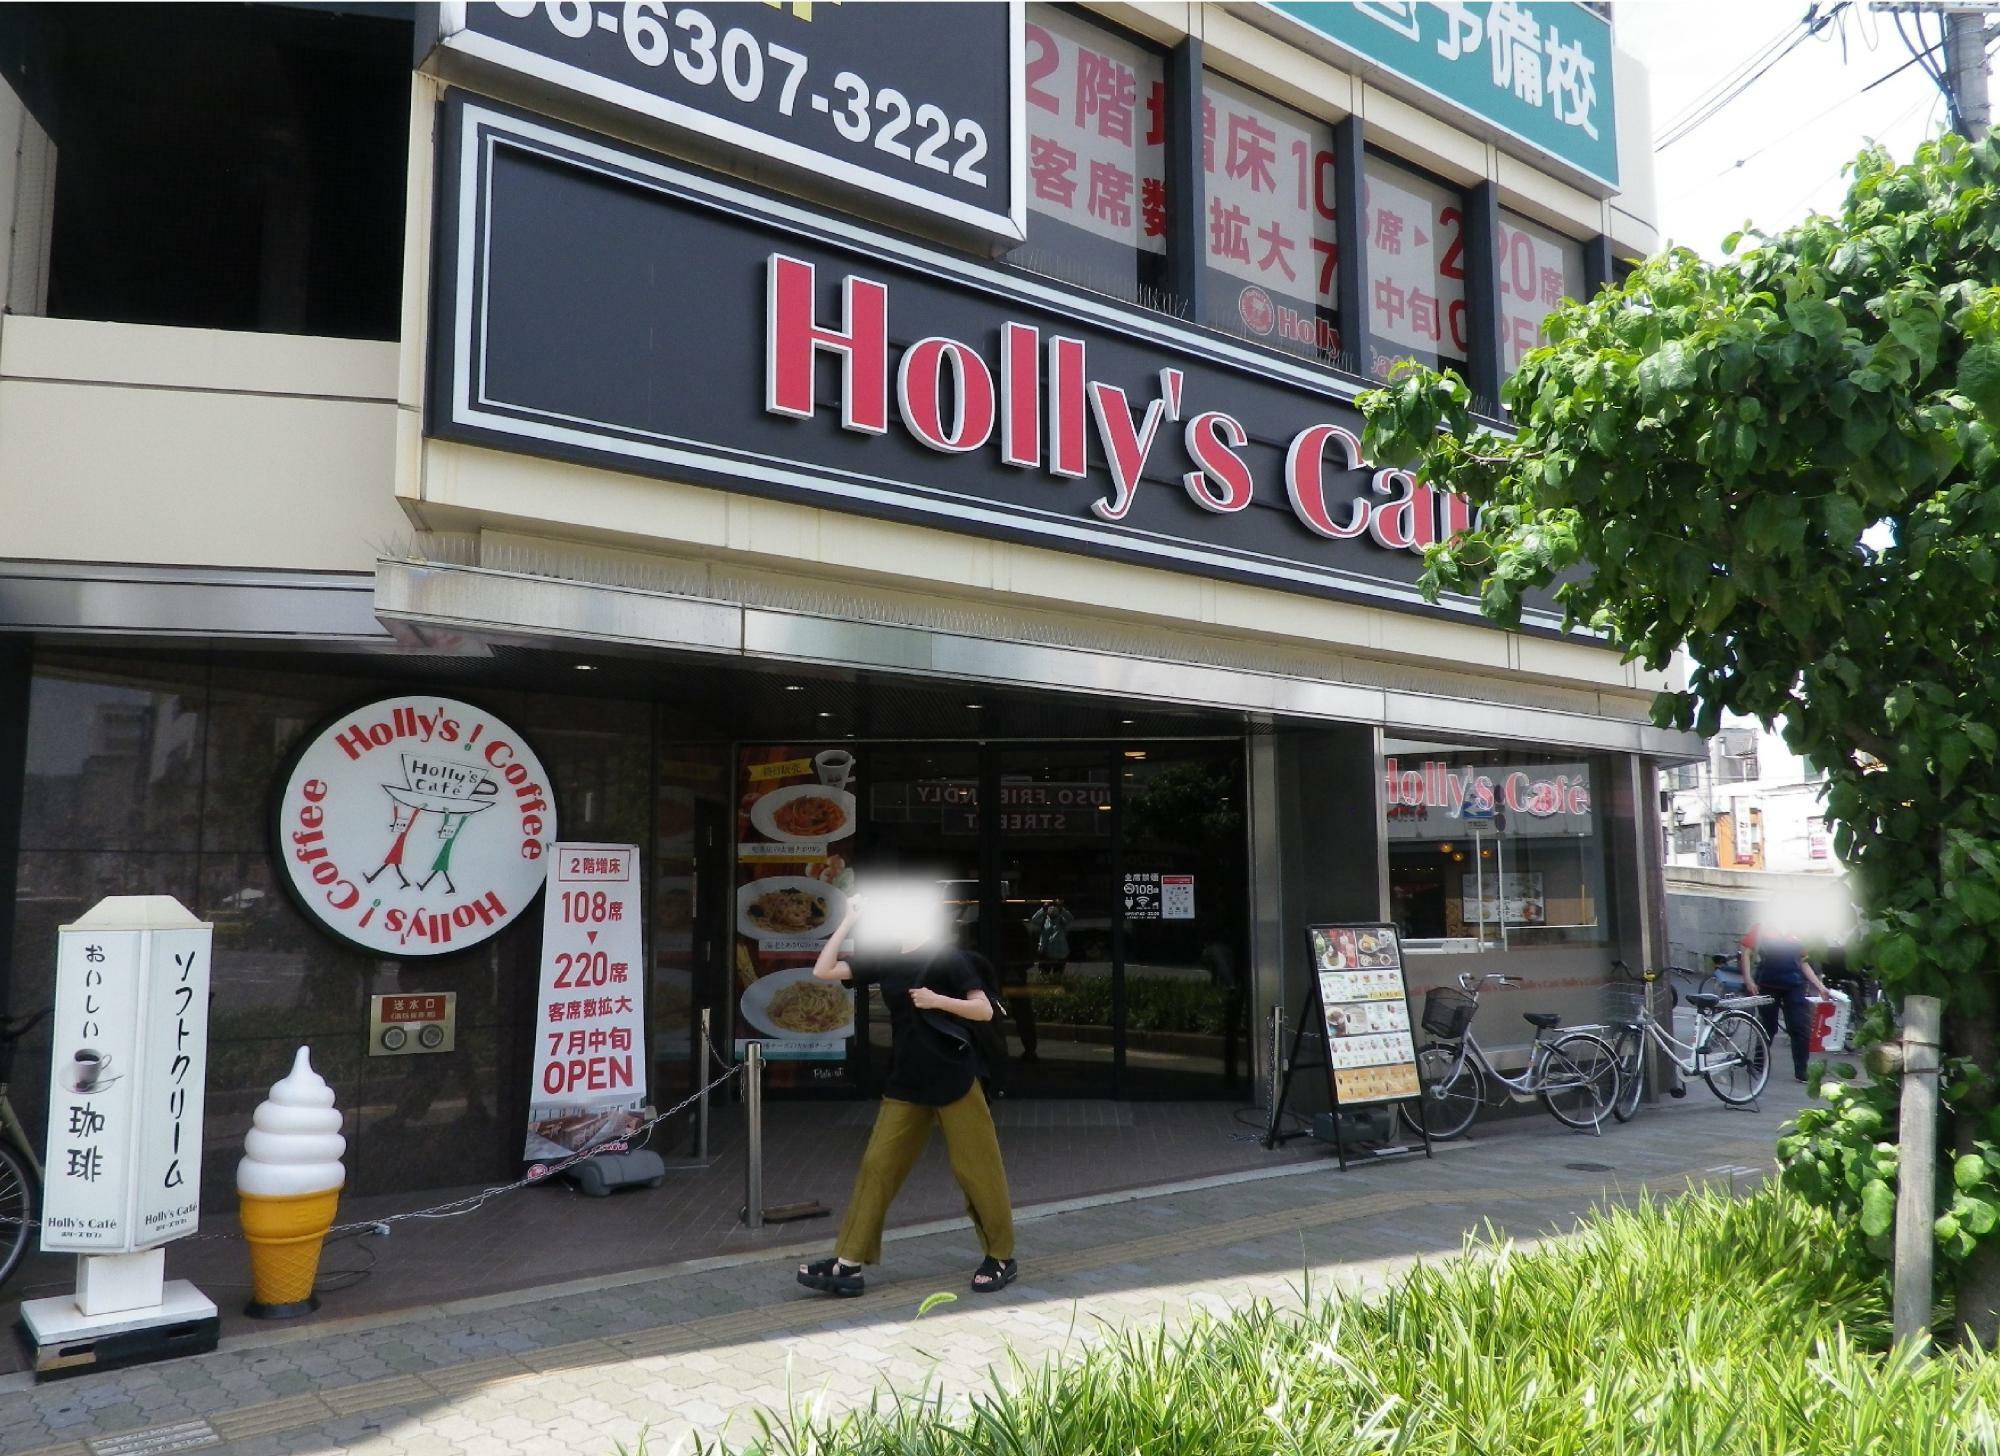 ソフトクリームも食べられる「Holly’s Café (ホリーズカフェ)十三店」。